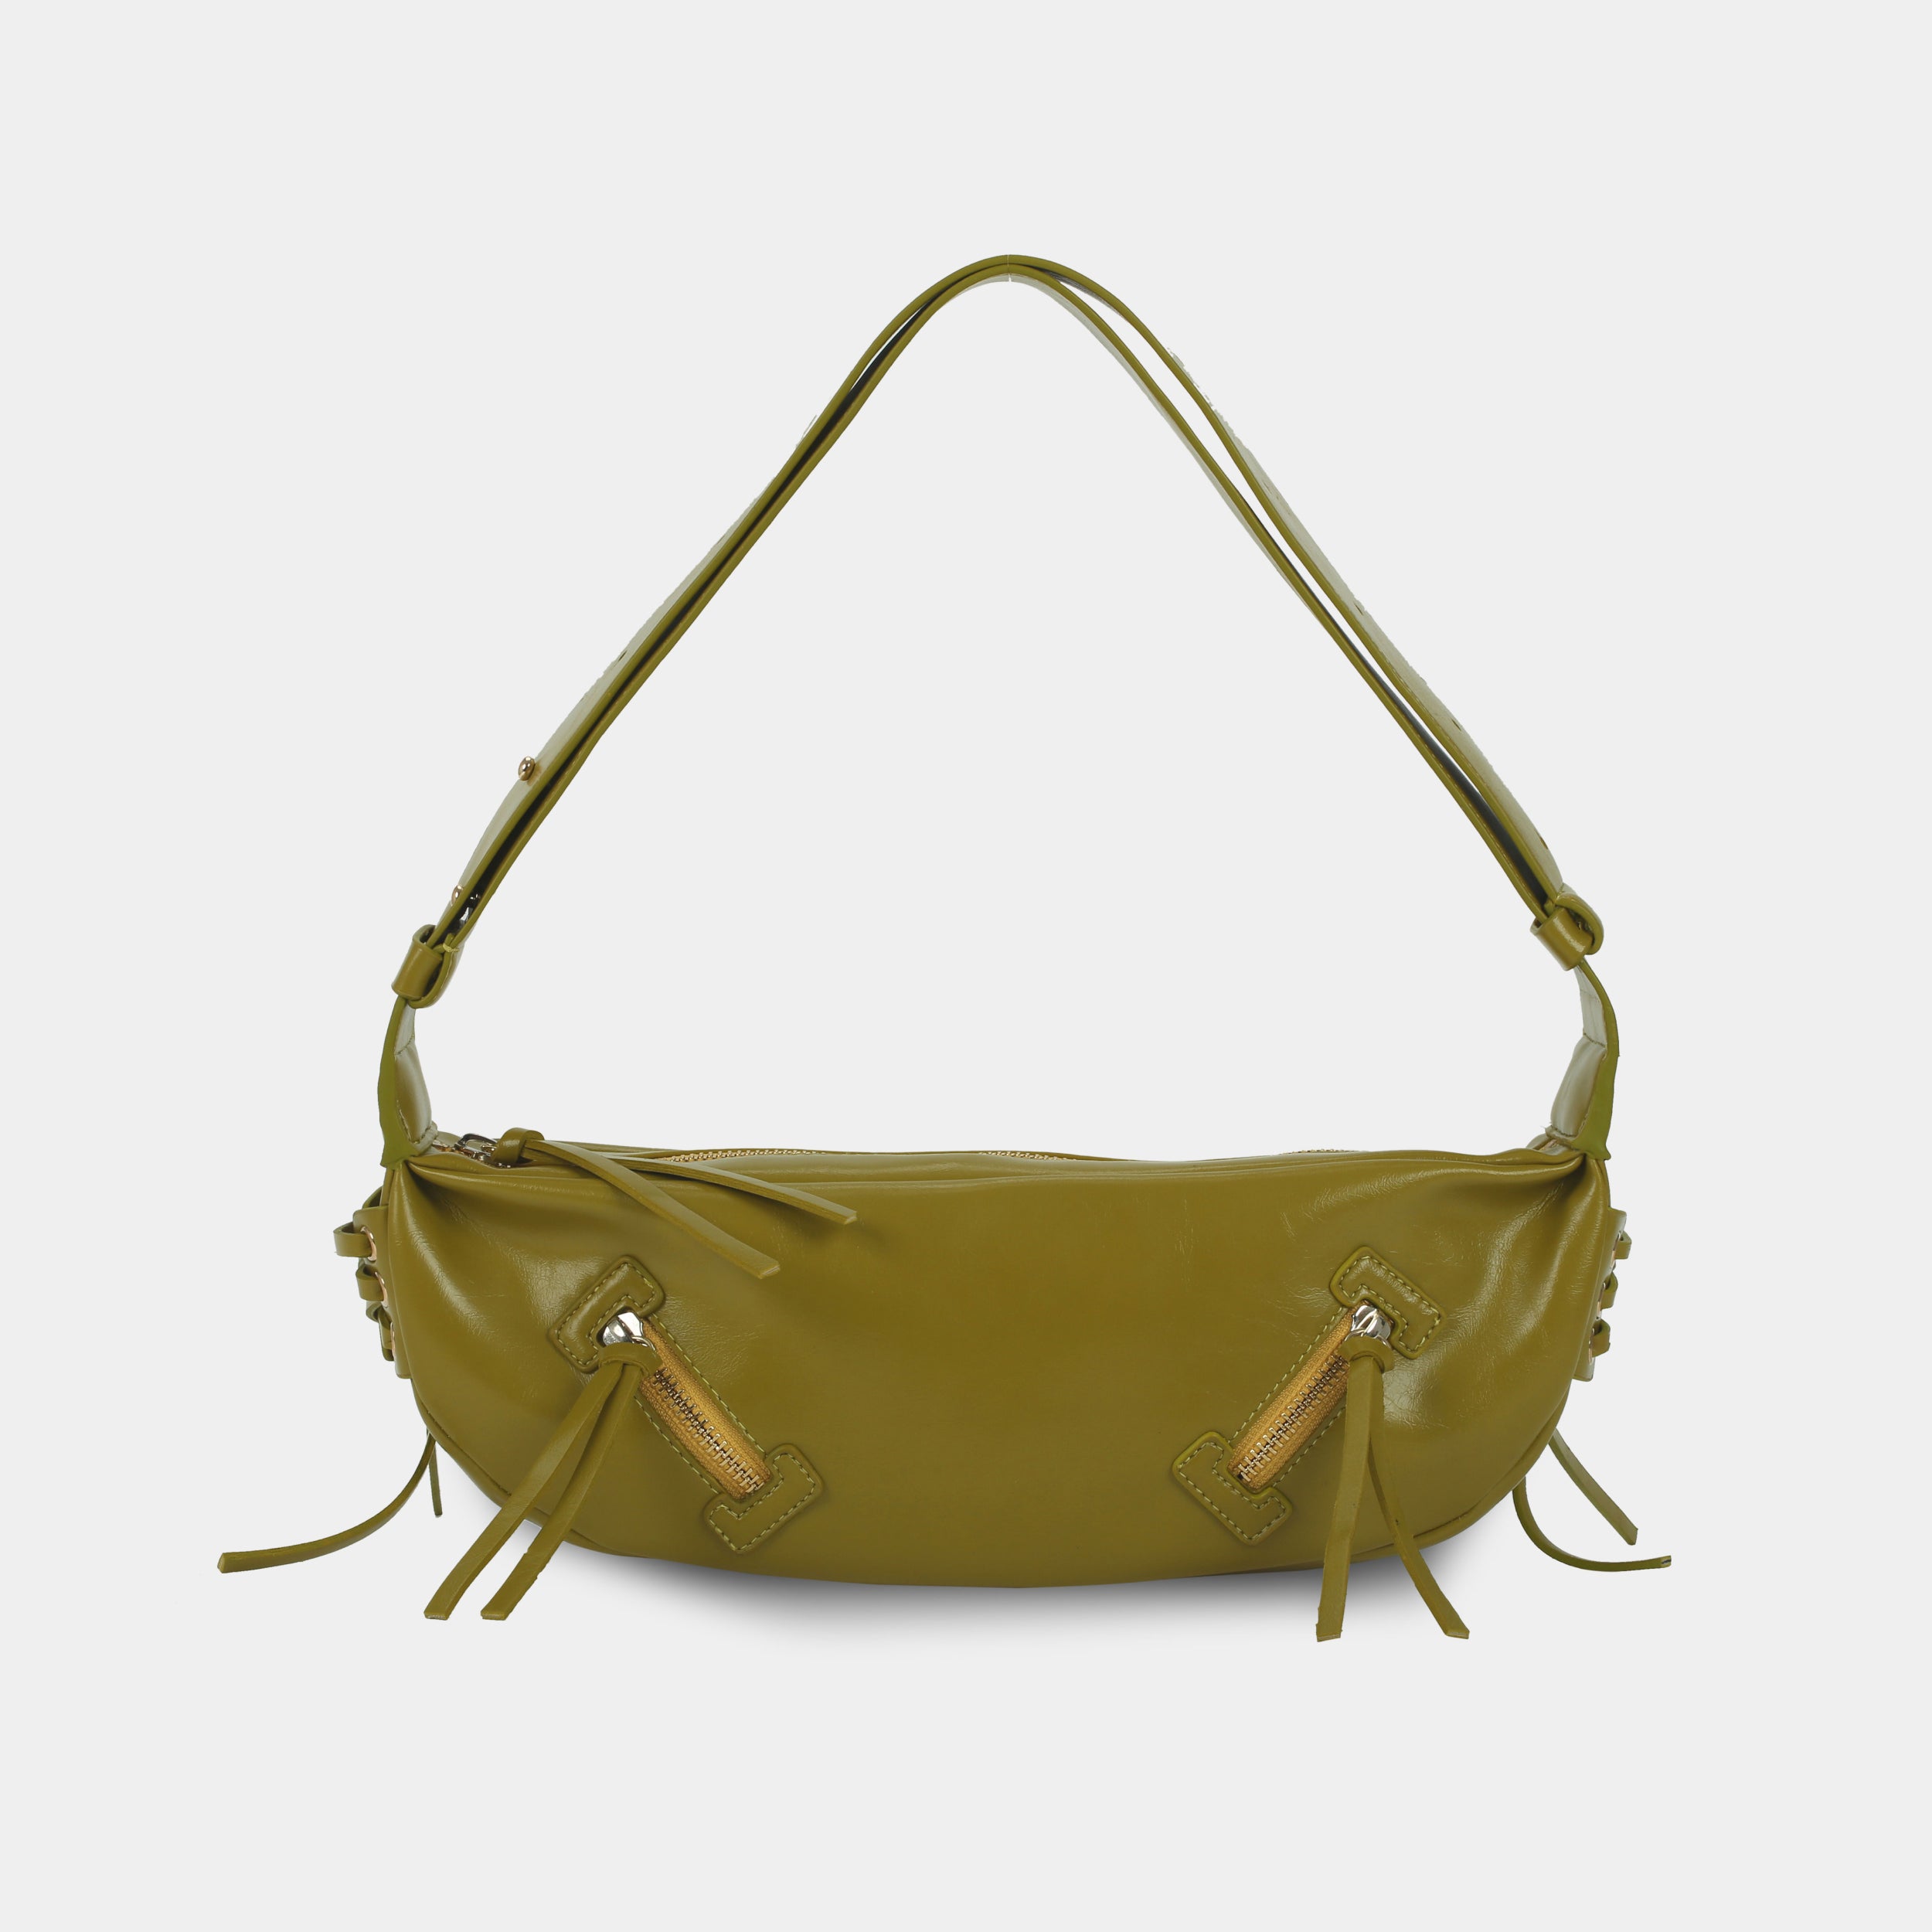 Túi xách LACE size lớn (M) màu vàng dưa cải